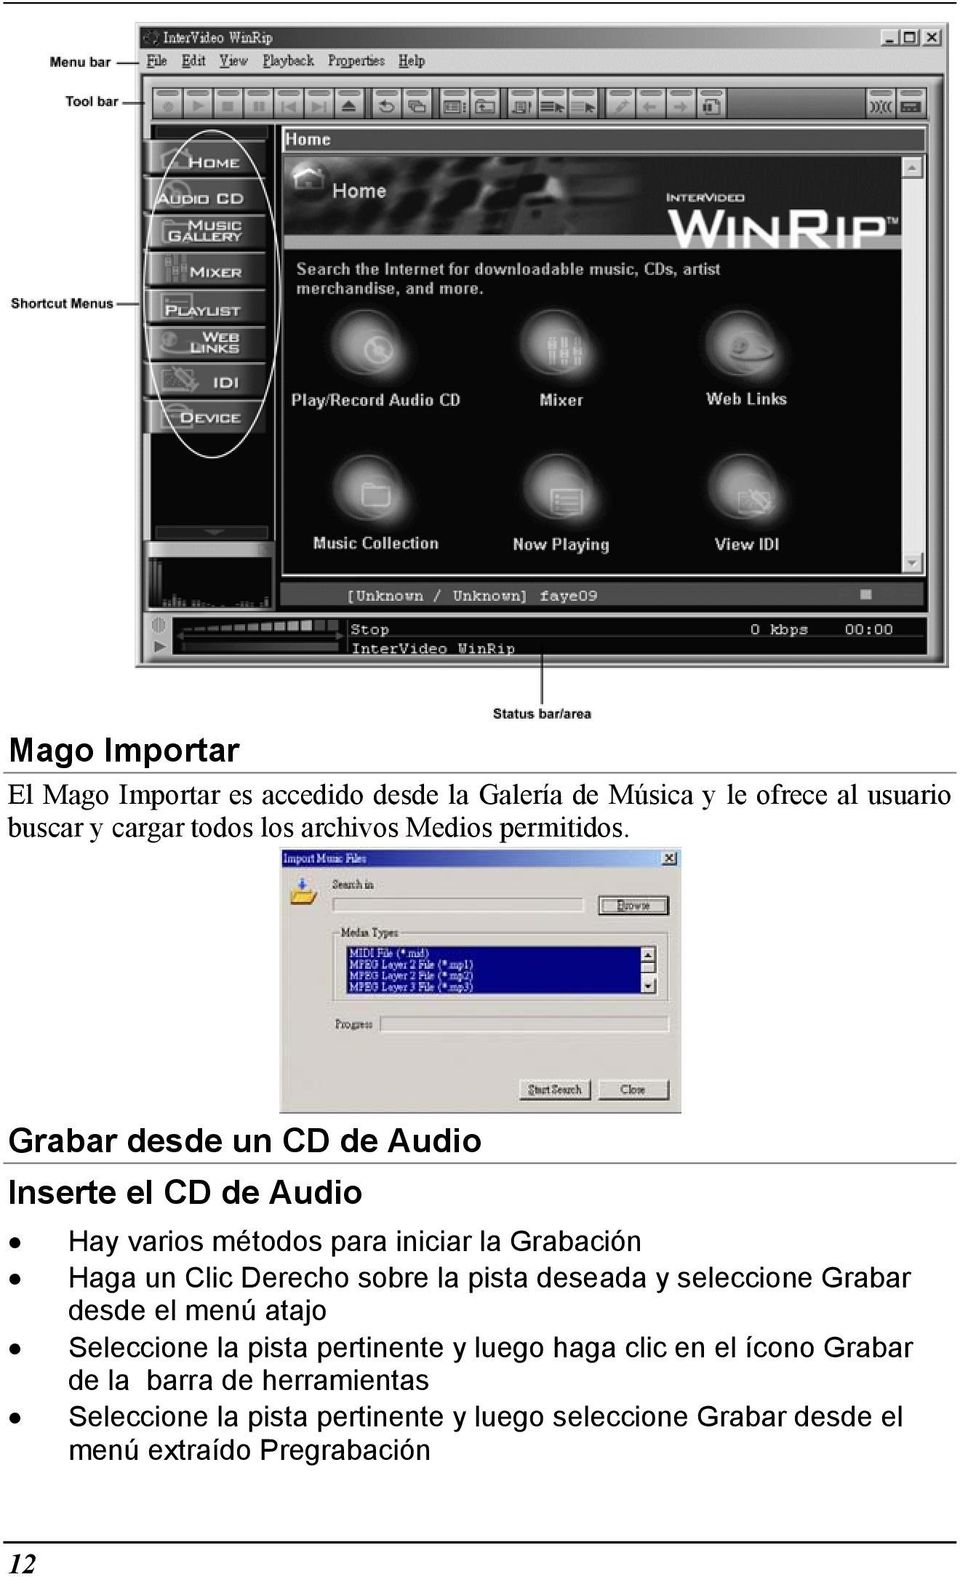 Grabar desde un CD de Audio Inserte el CD de Audio Hay varios métodos para iniciar la Grabación Haga un Clic Derecho sobre la